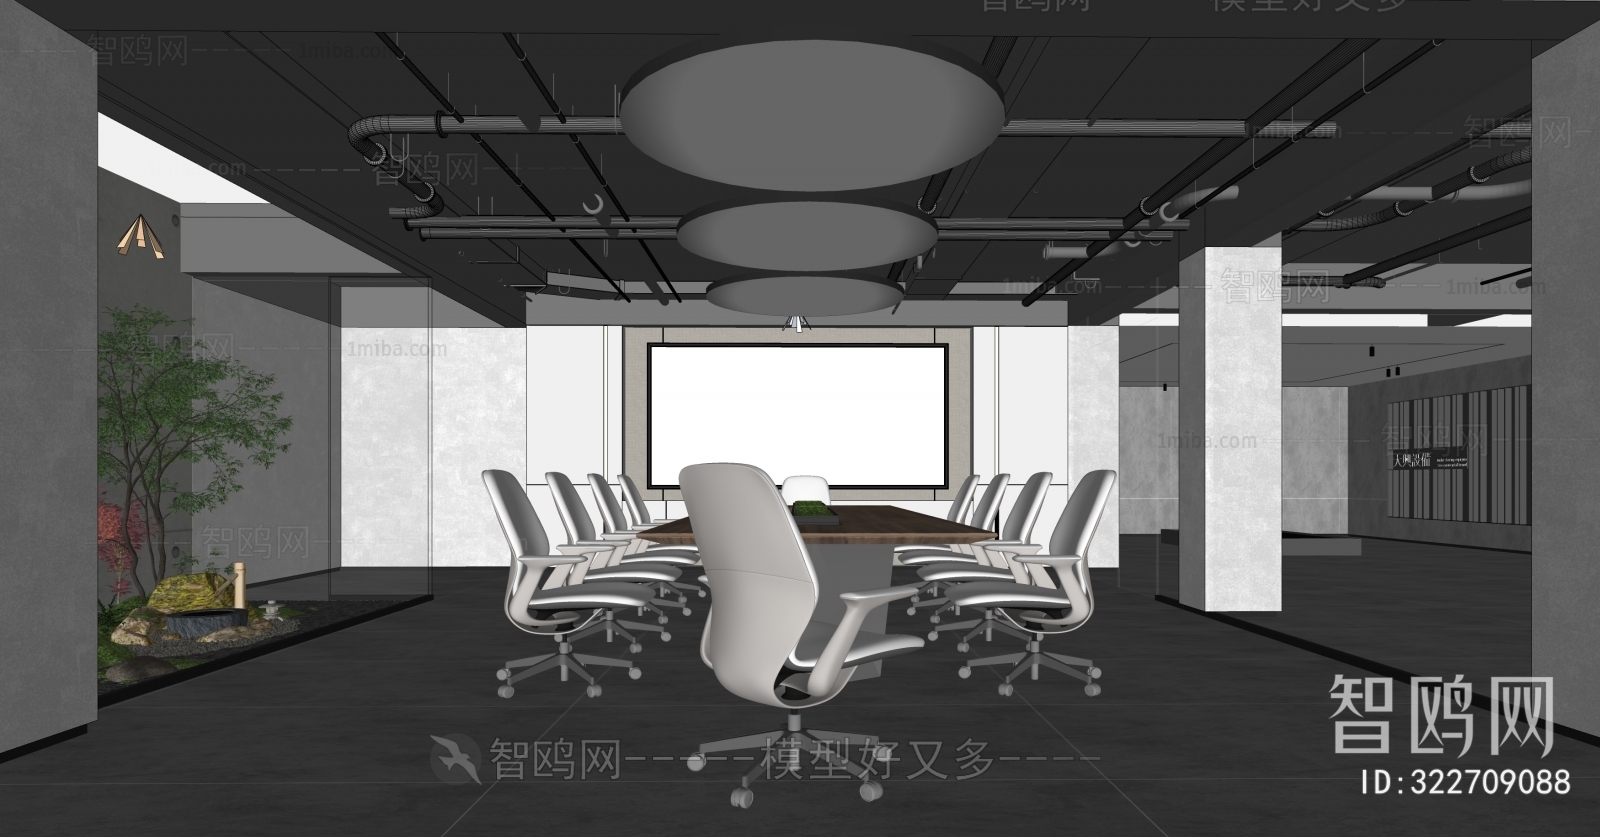 Modern Industrial Style Meeting Room